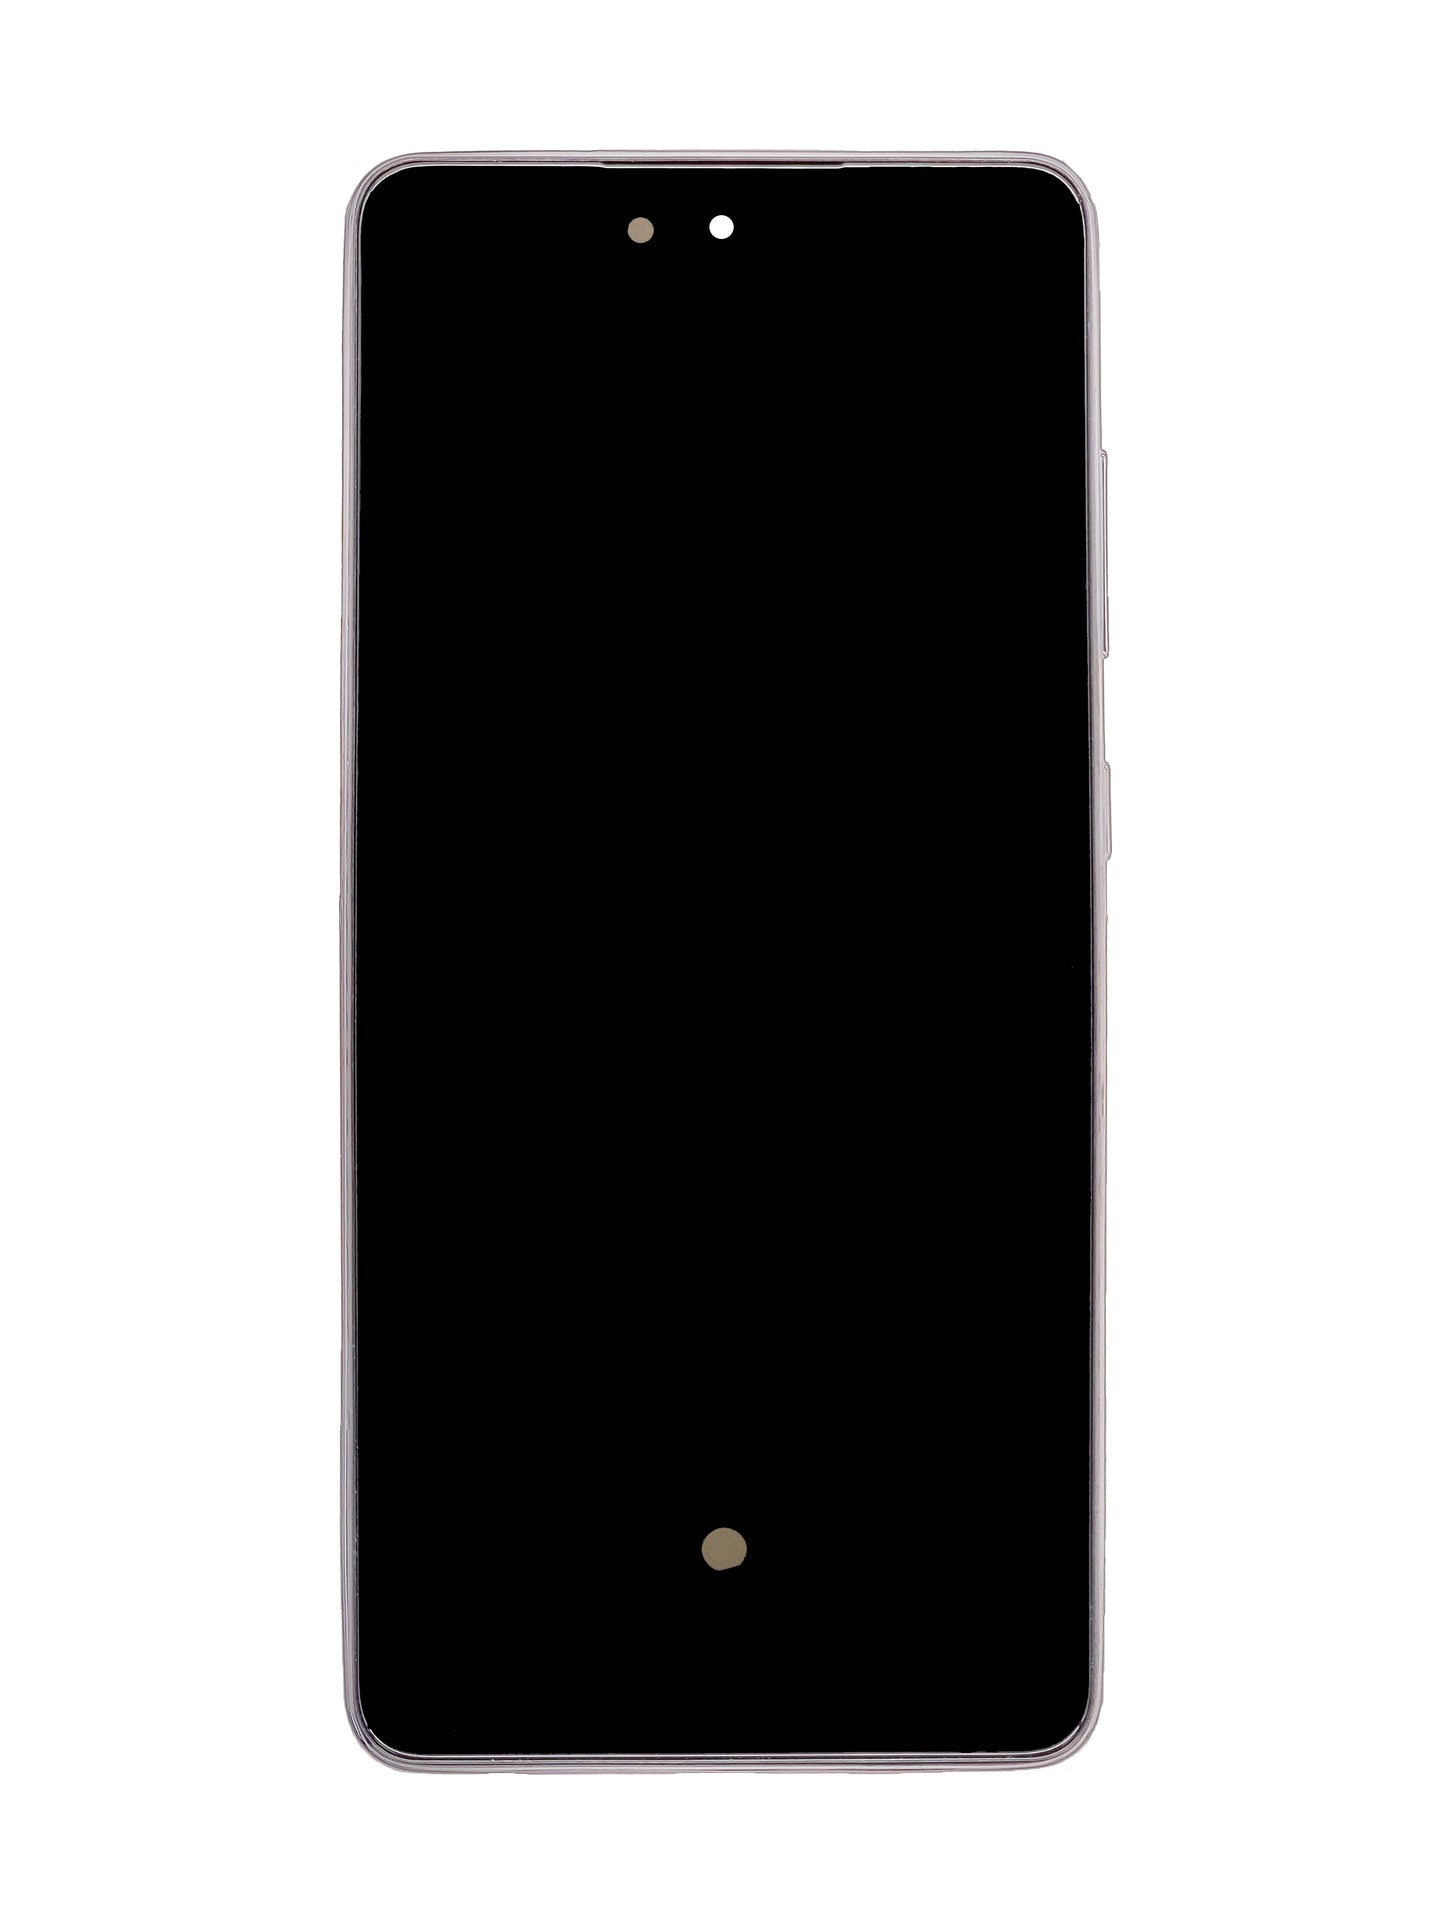 SGA A52 2021 4G (A525) / A52 5G (A526) A52s 2021 (A528) Screen Assembly (With The Frame) (OLED) (Awesome Black)